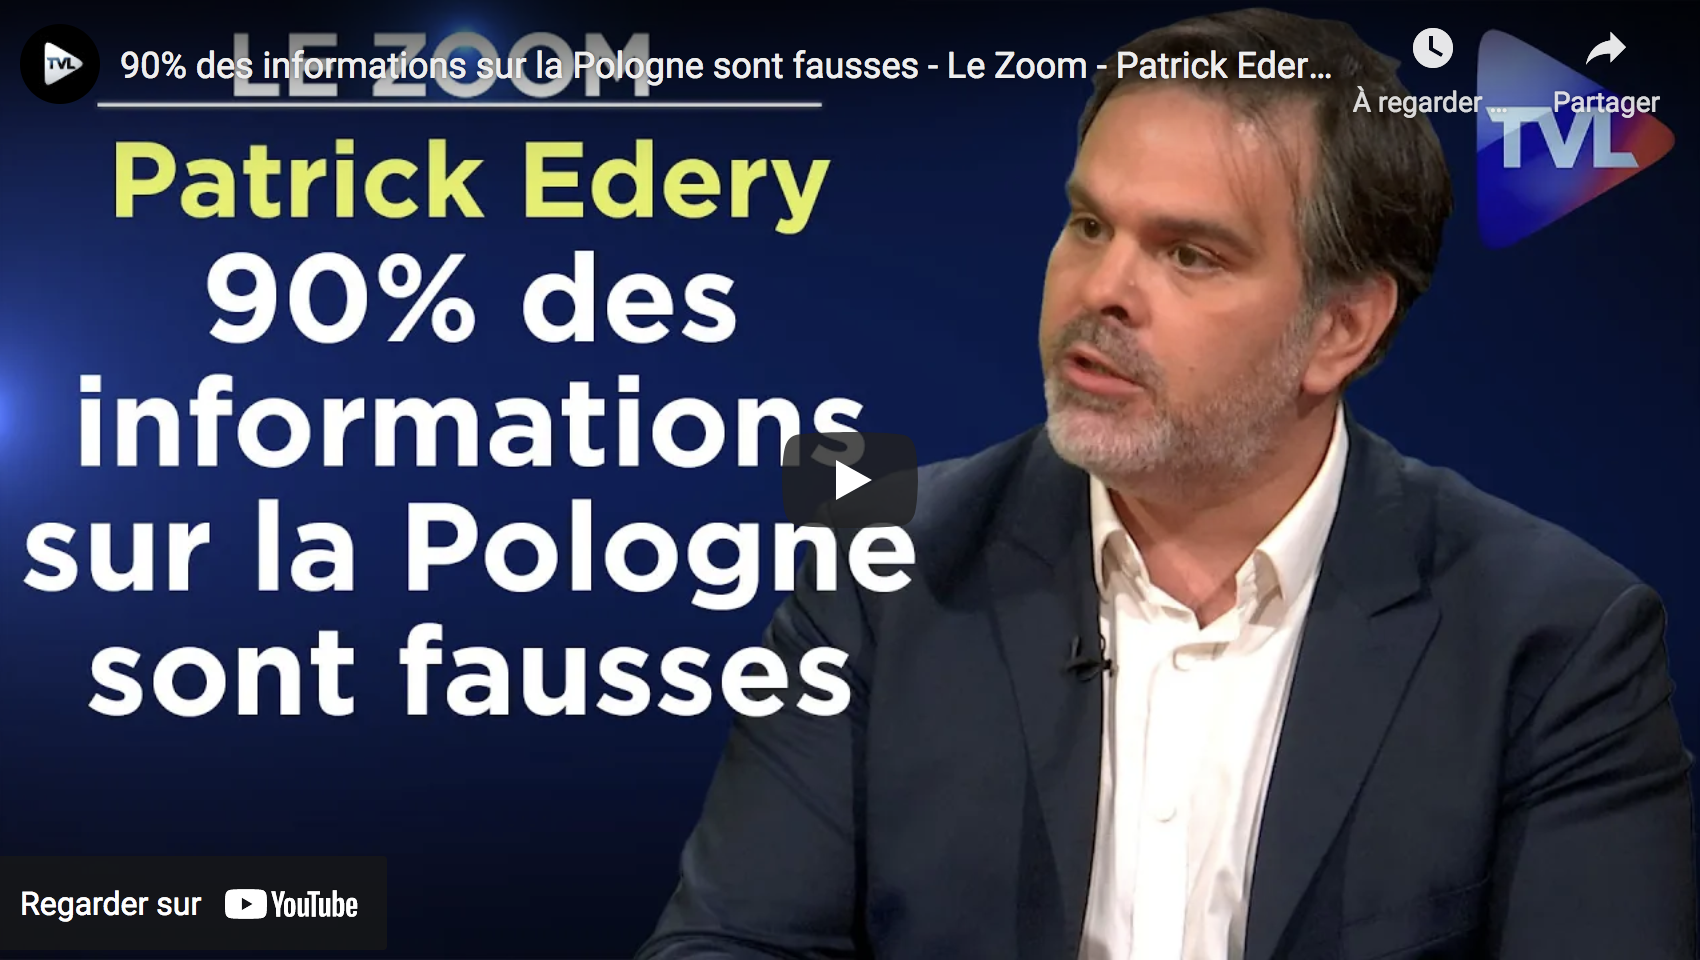 Patrick Edery : “90% des informations sur la Pologne sont fausses” (VIDÉO)